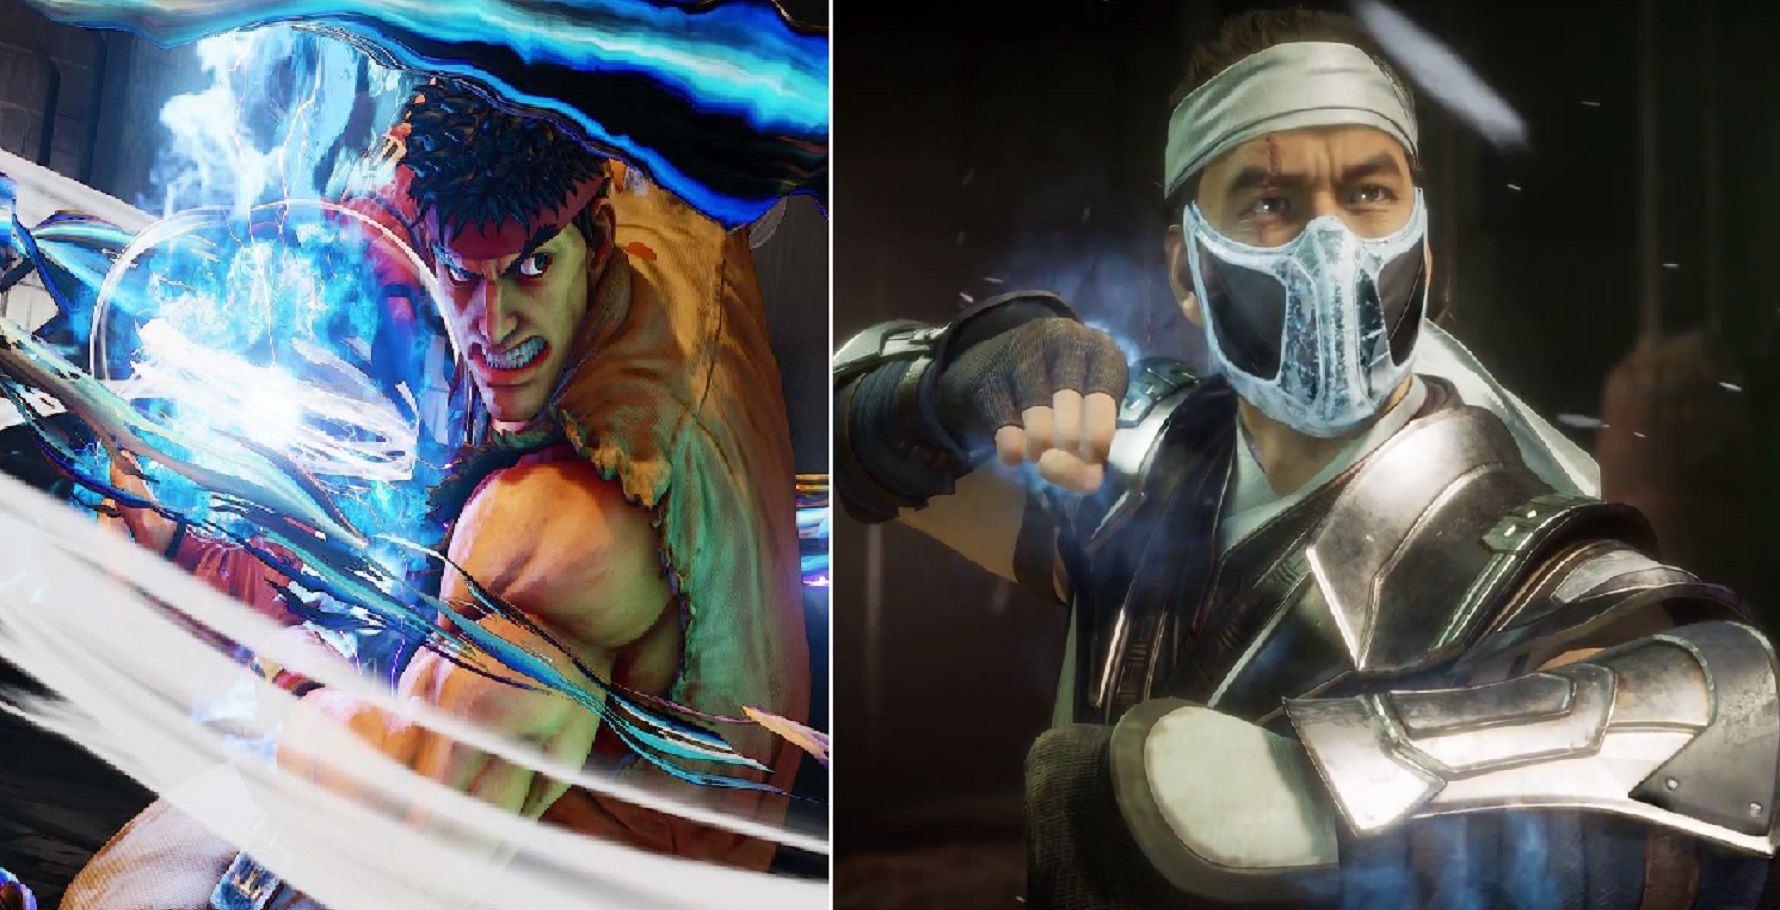 Mortal Kombat vs Street Fighter 